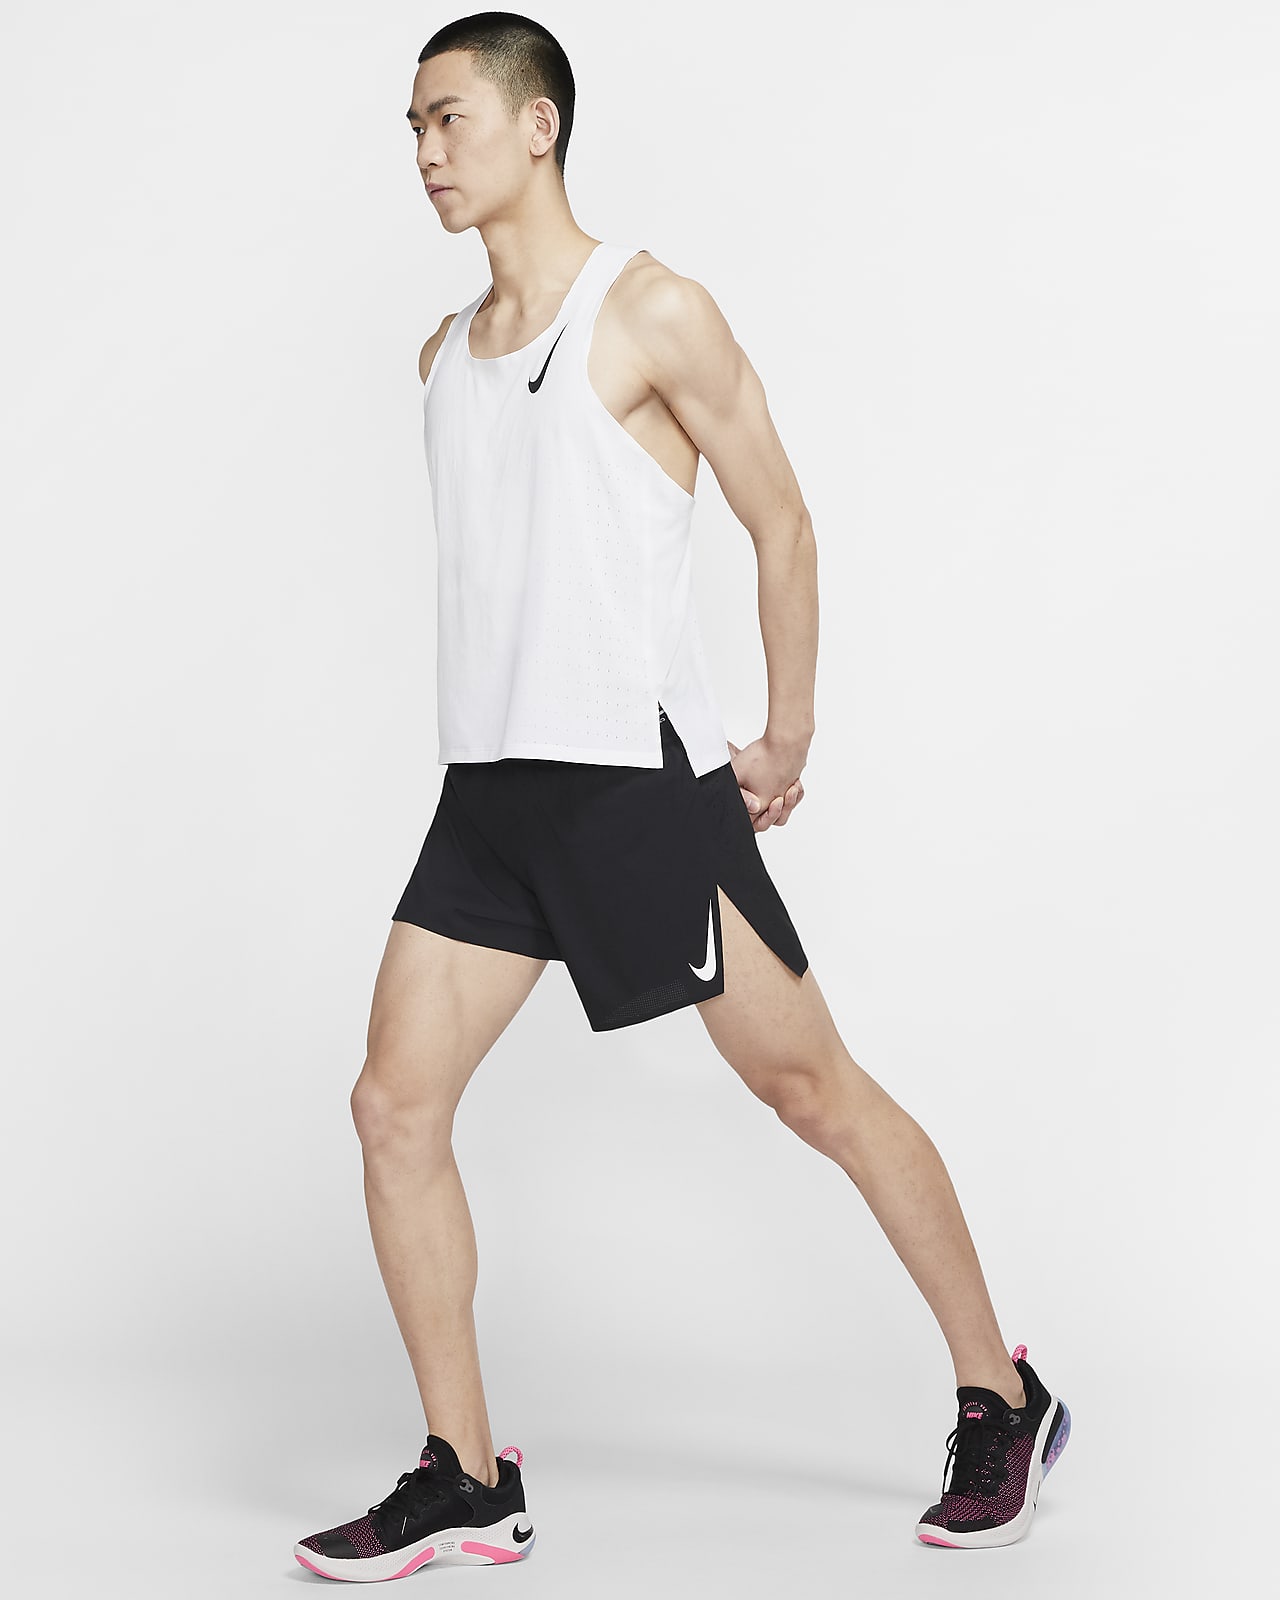 Men's Running Shorts. Nike ID